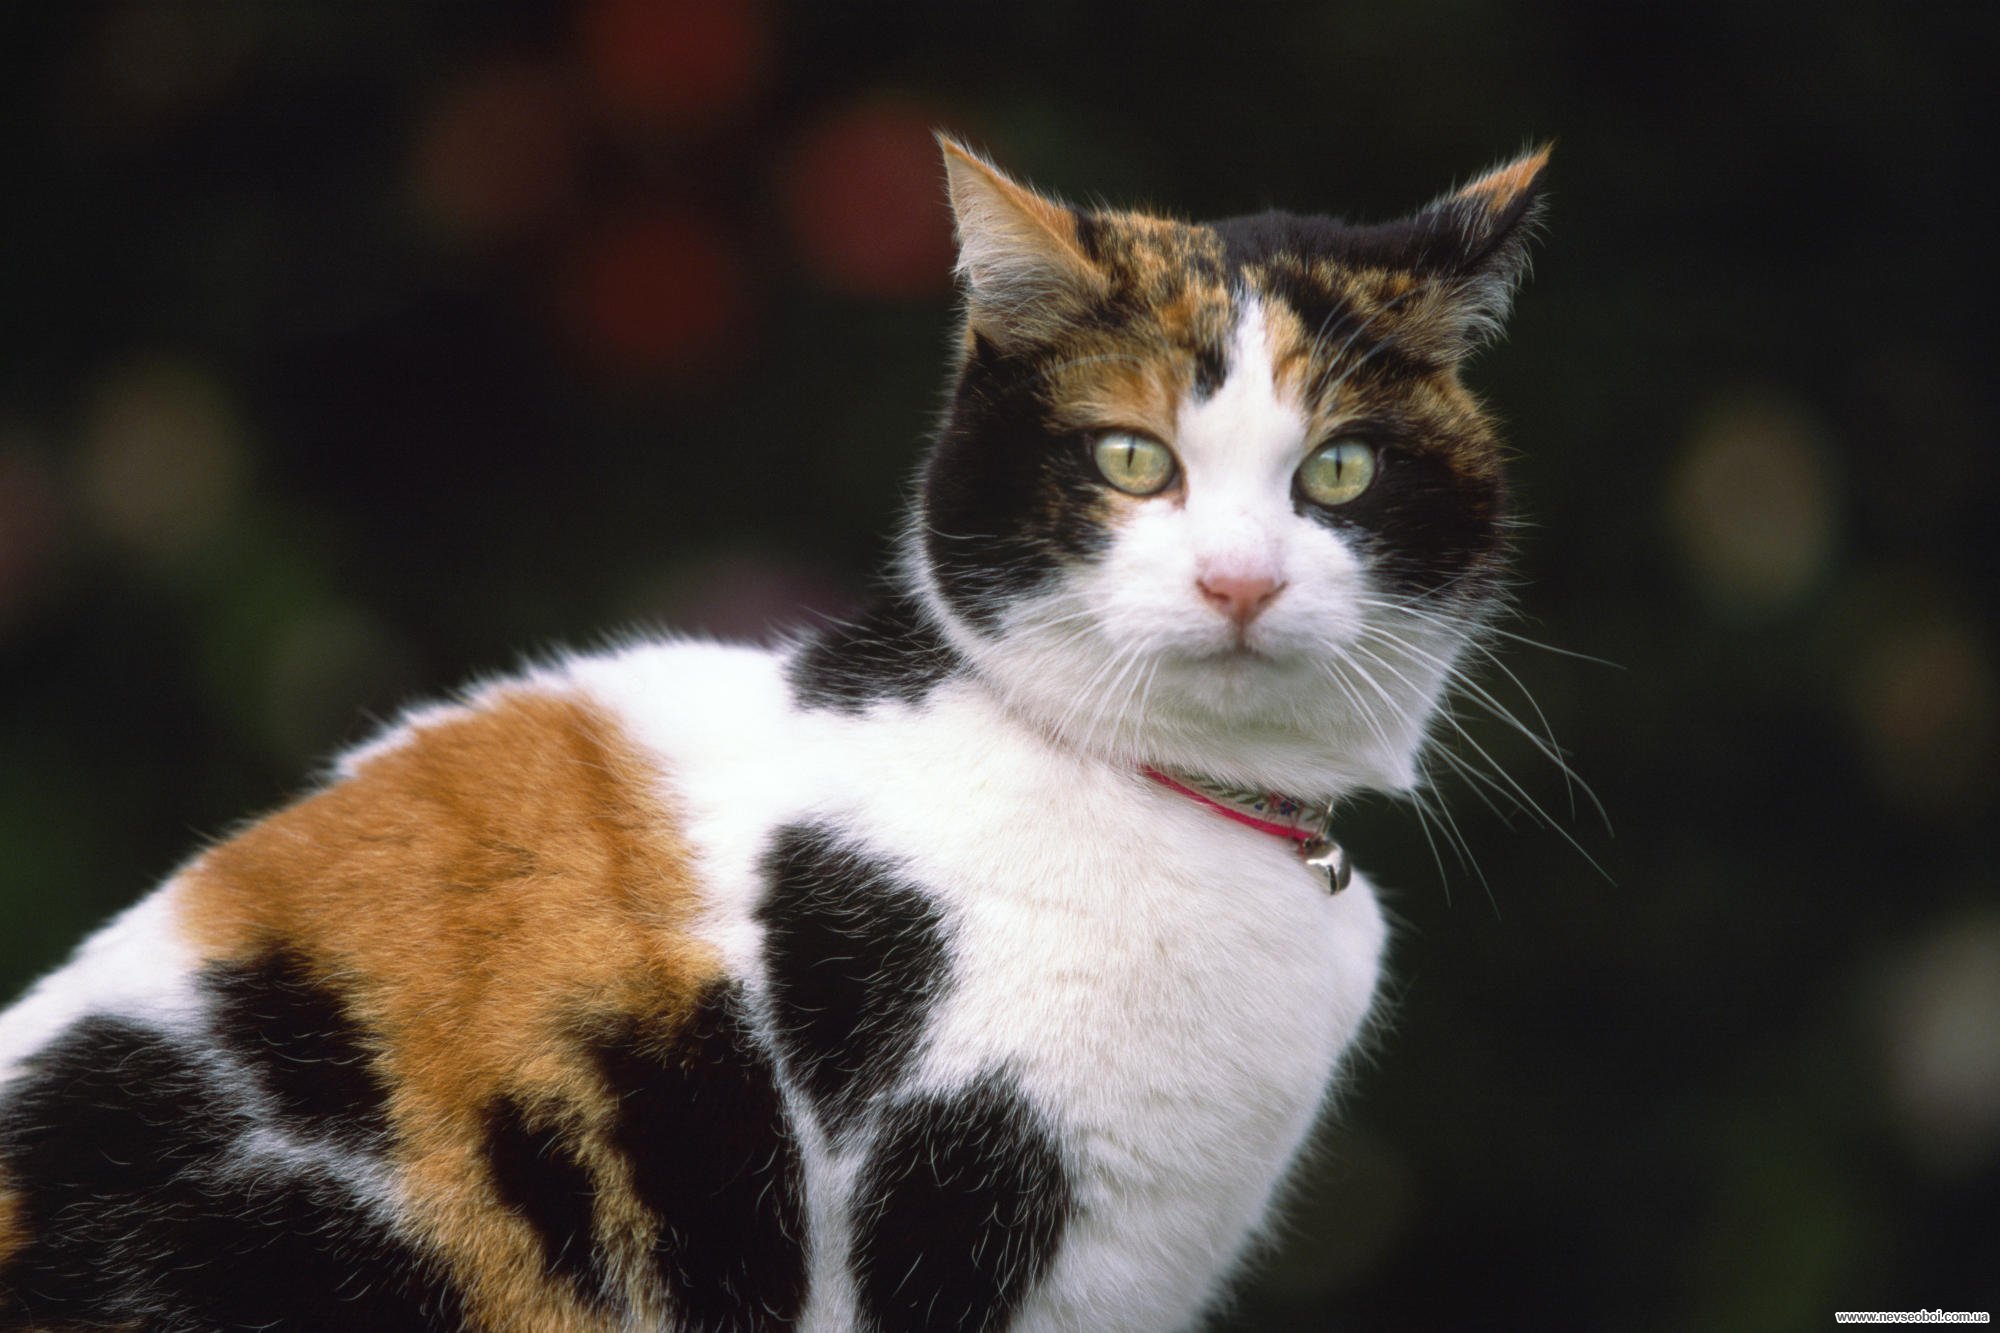 Пестрый кот. Сибирская кошка трехцветная короткошерстная. Европейская короткошерстная кошка трехцветная. Американская короткошерстная кошка трехцветная. Порода Калико.